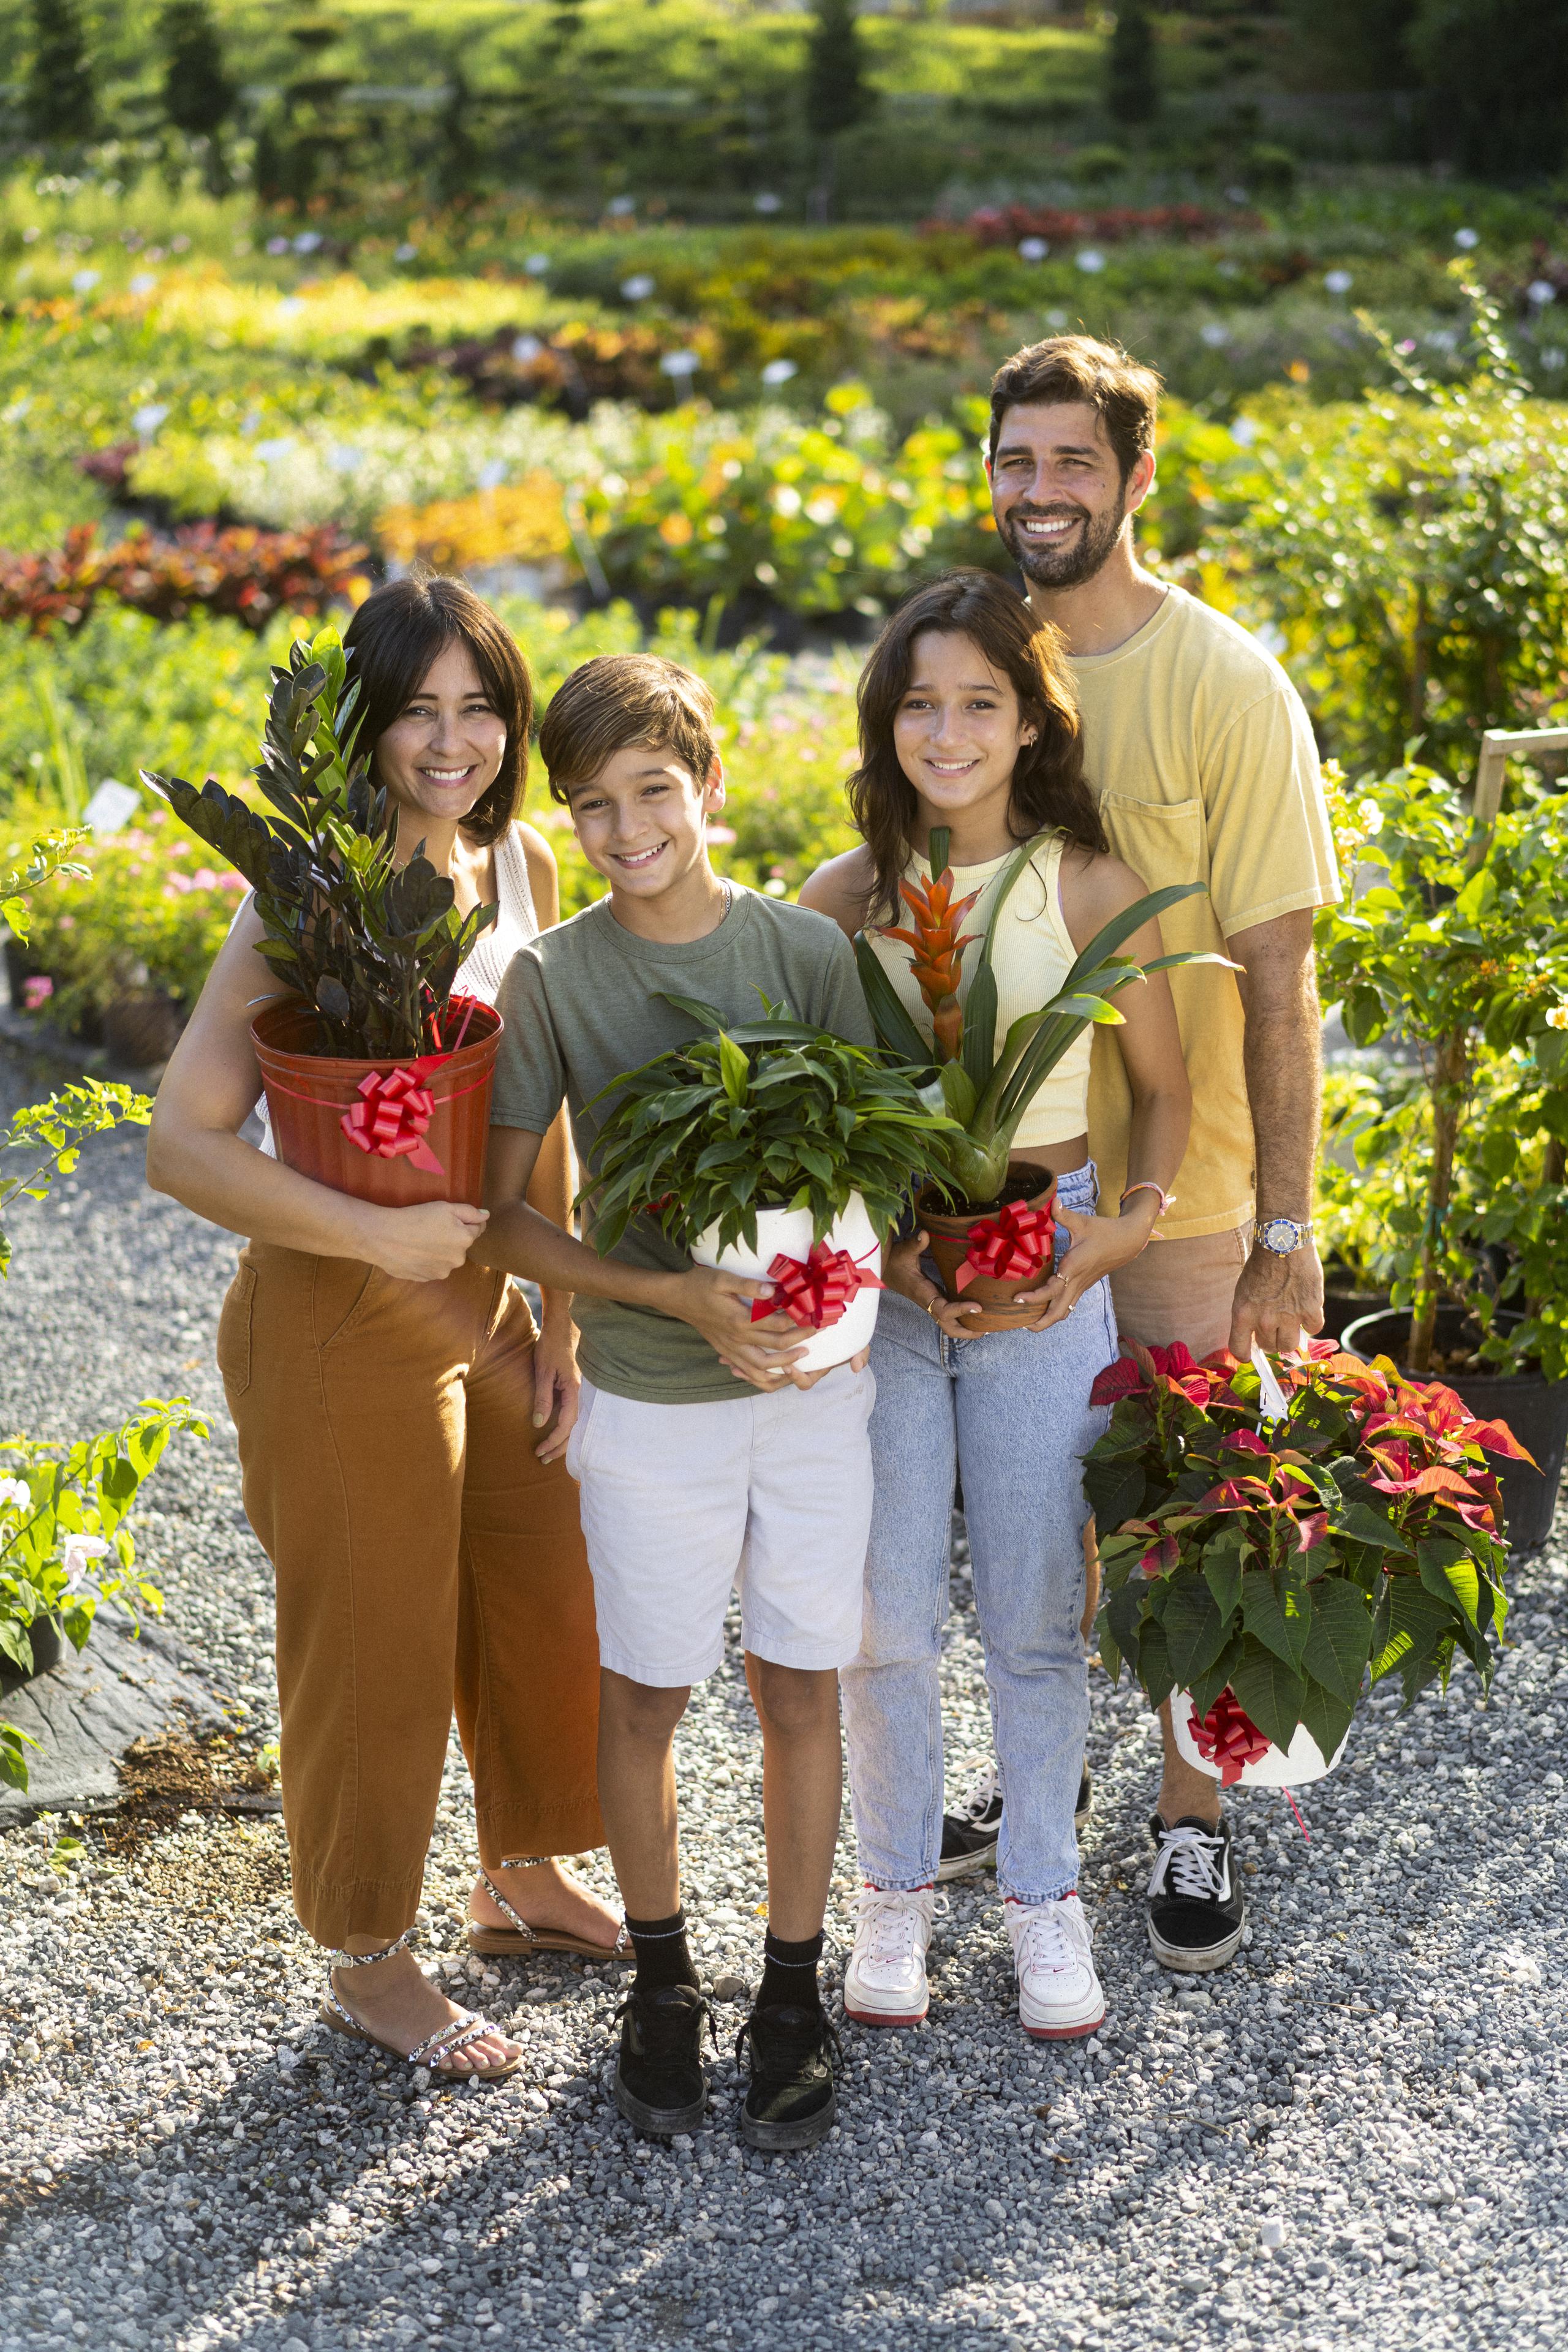 Plantas de Caparras es una compañía dedicada a la venta de plantas ornamentales ubicada en Aguas Buenas.